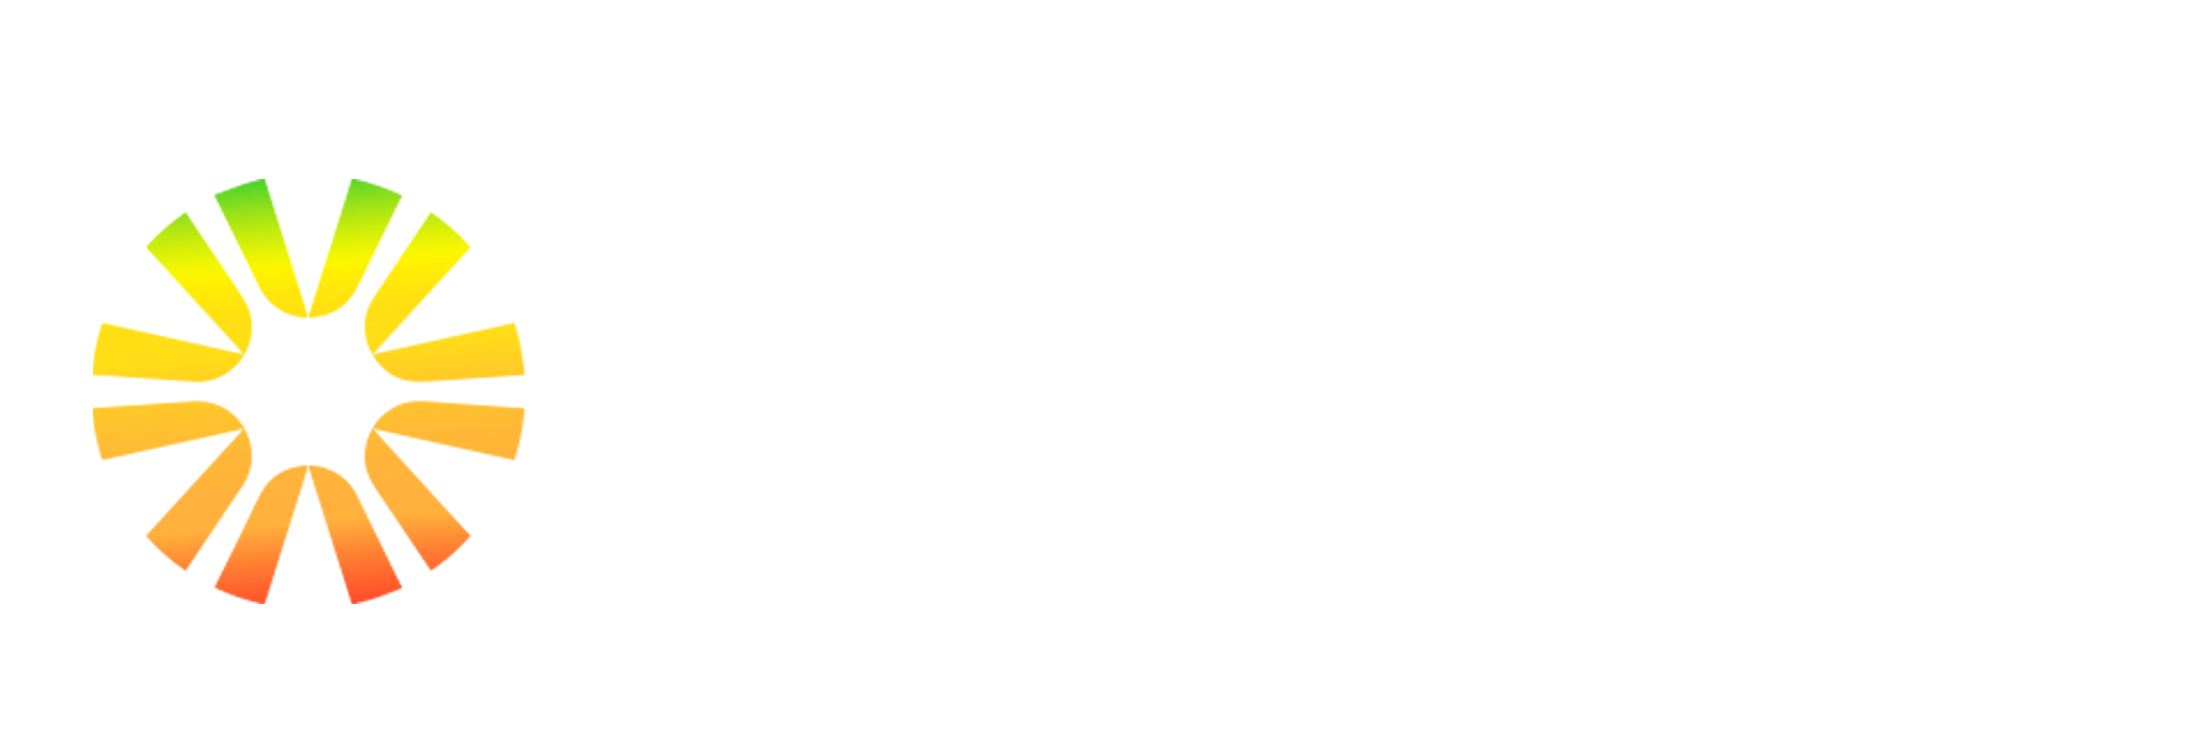 Habit Finder Health